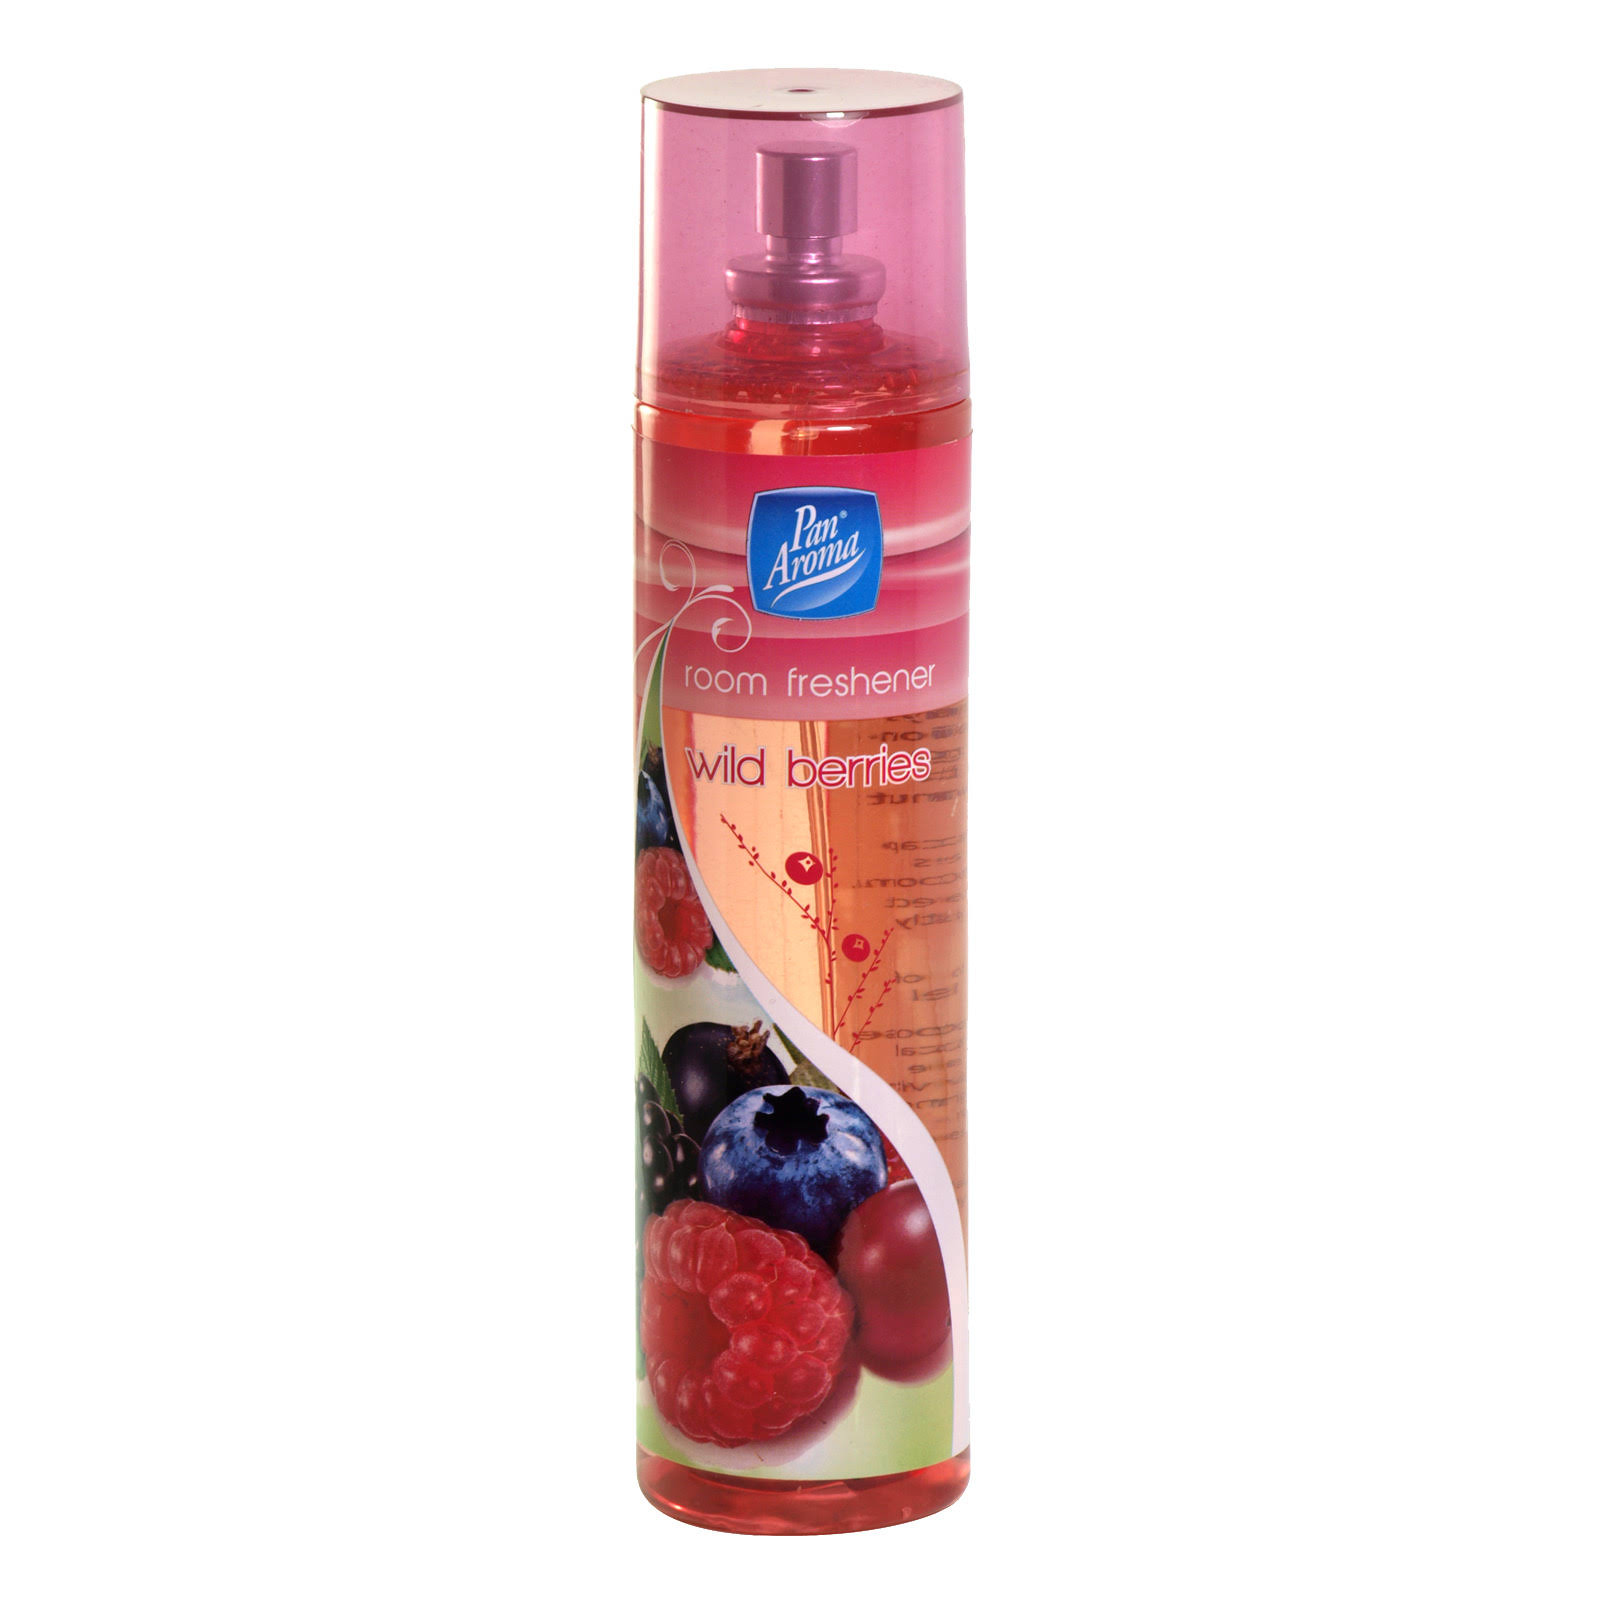 Pan Aroma Room Freshener Spray - Wild Berries, 200ml